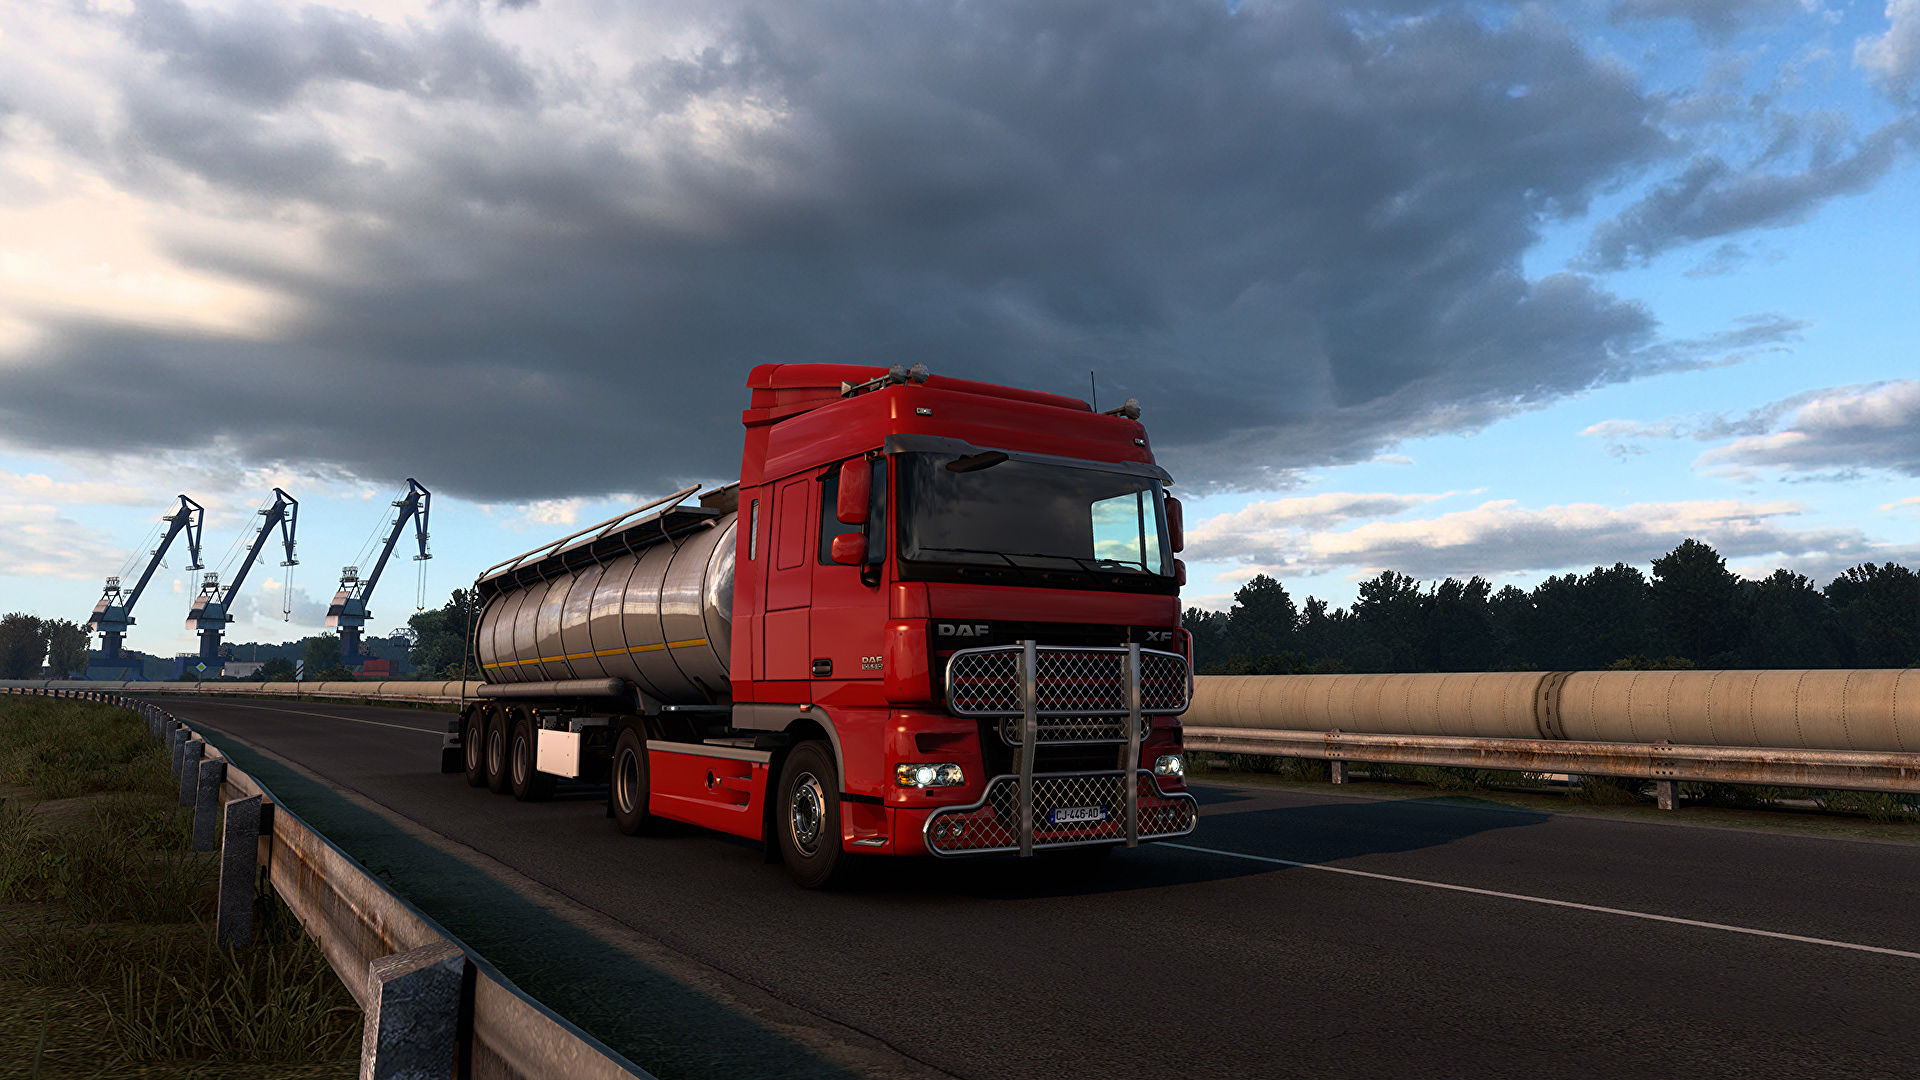 Euro Truck Simulator 2 (PC) é muito mais do que um simulador de